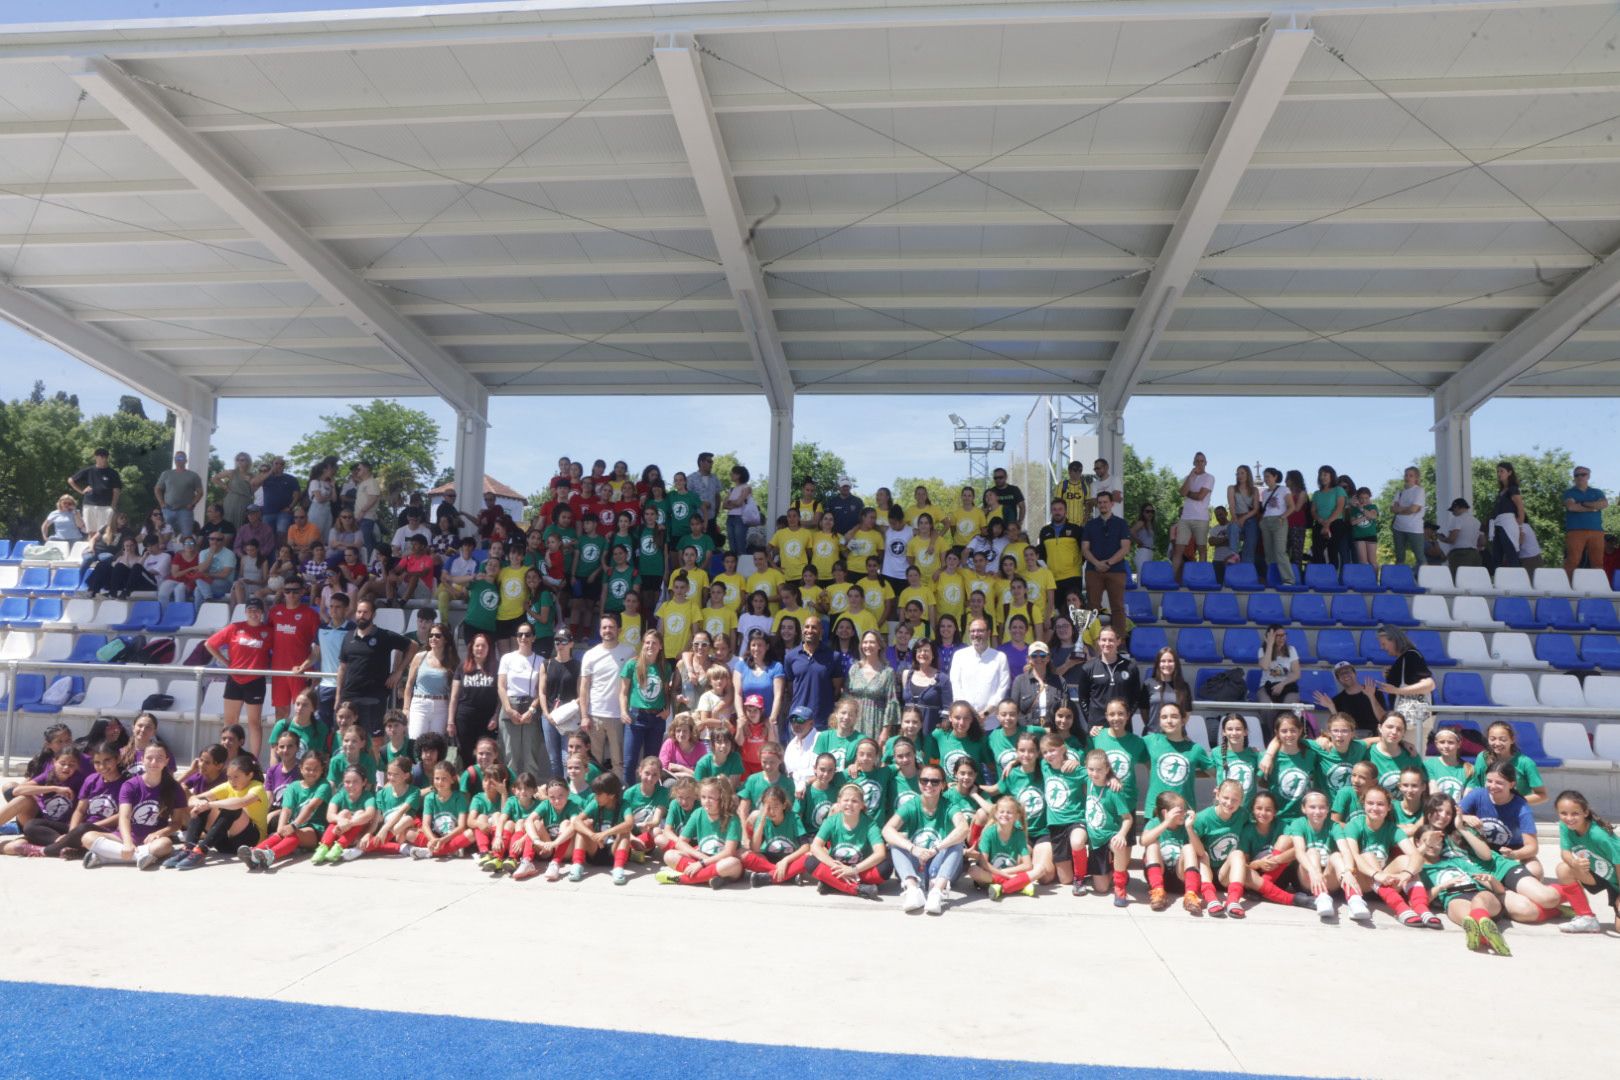 Guadalajara Rinde Homenaje a las Pioneras del Fútbol Femenino en el I Encuentro de Fútbol